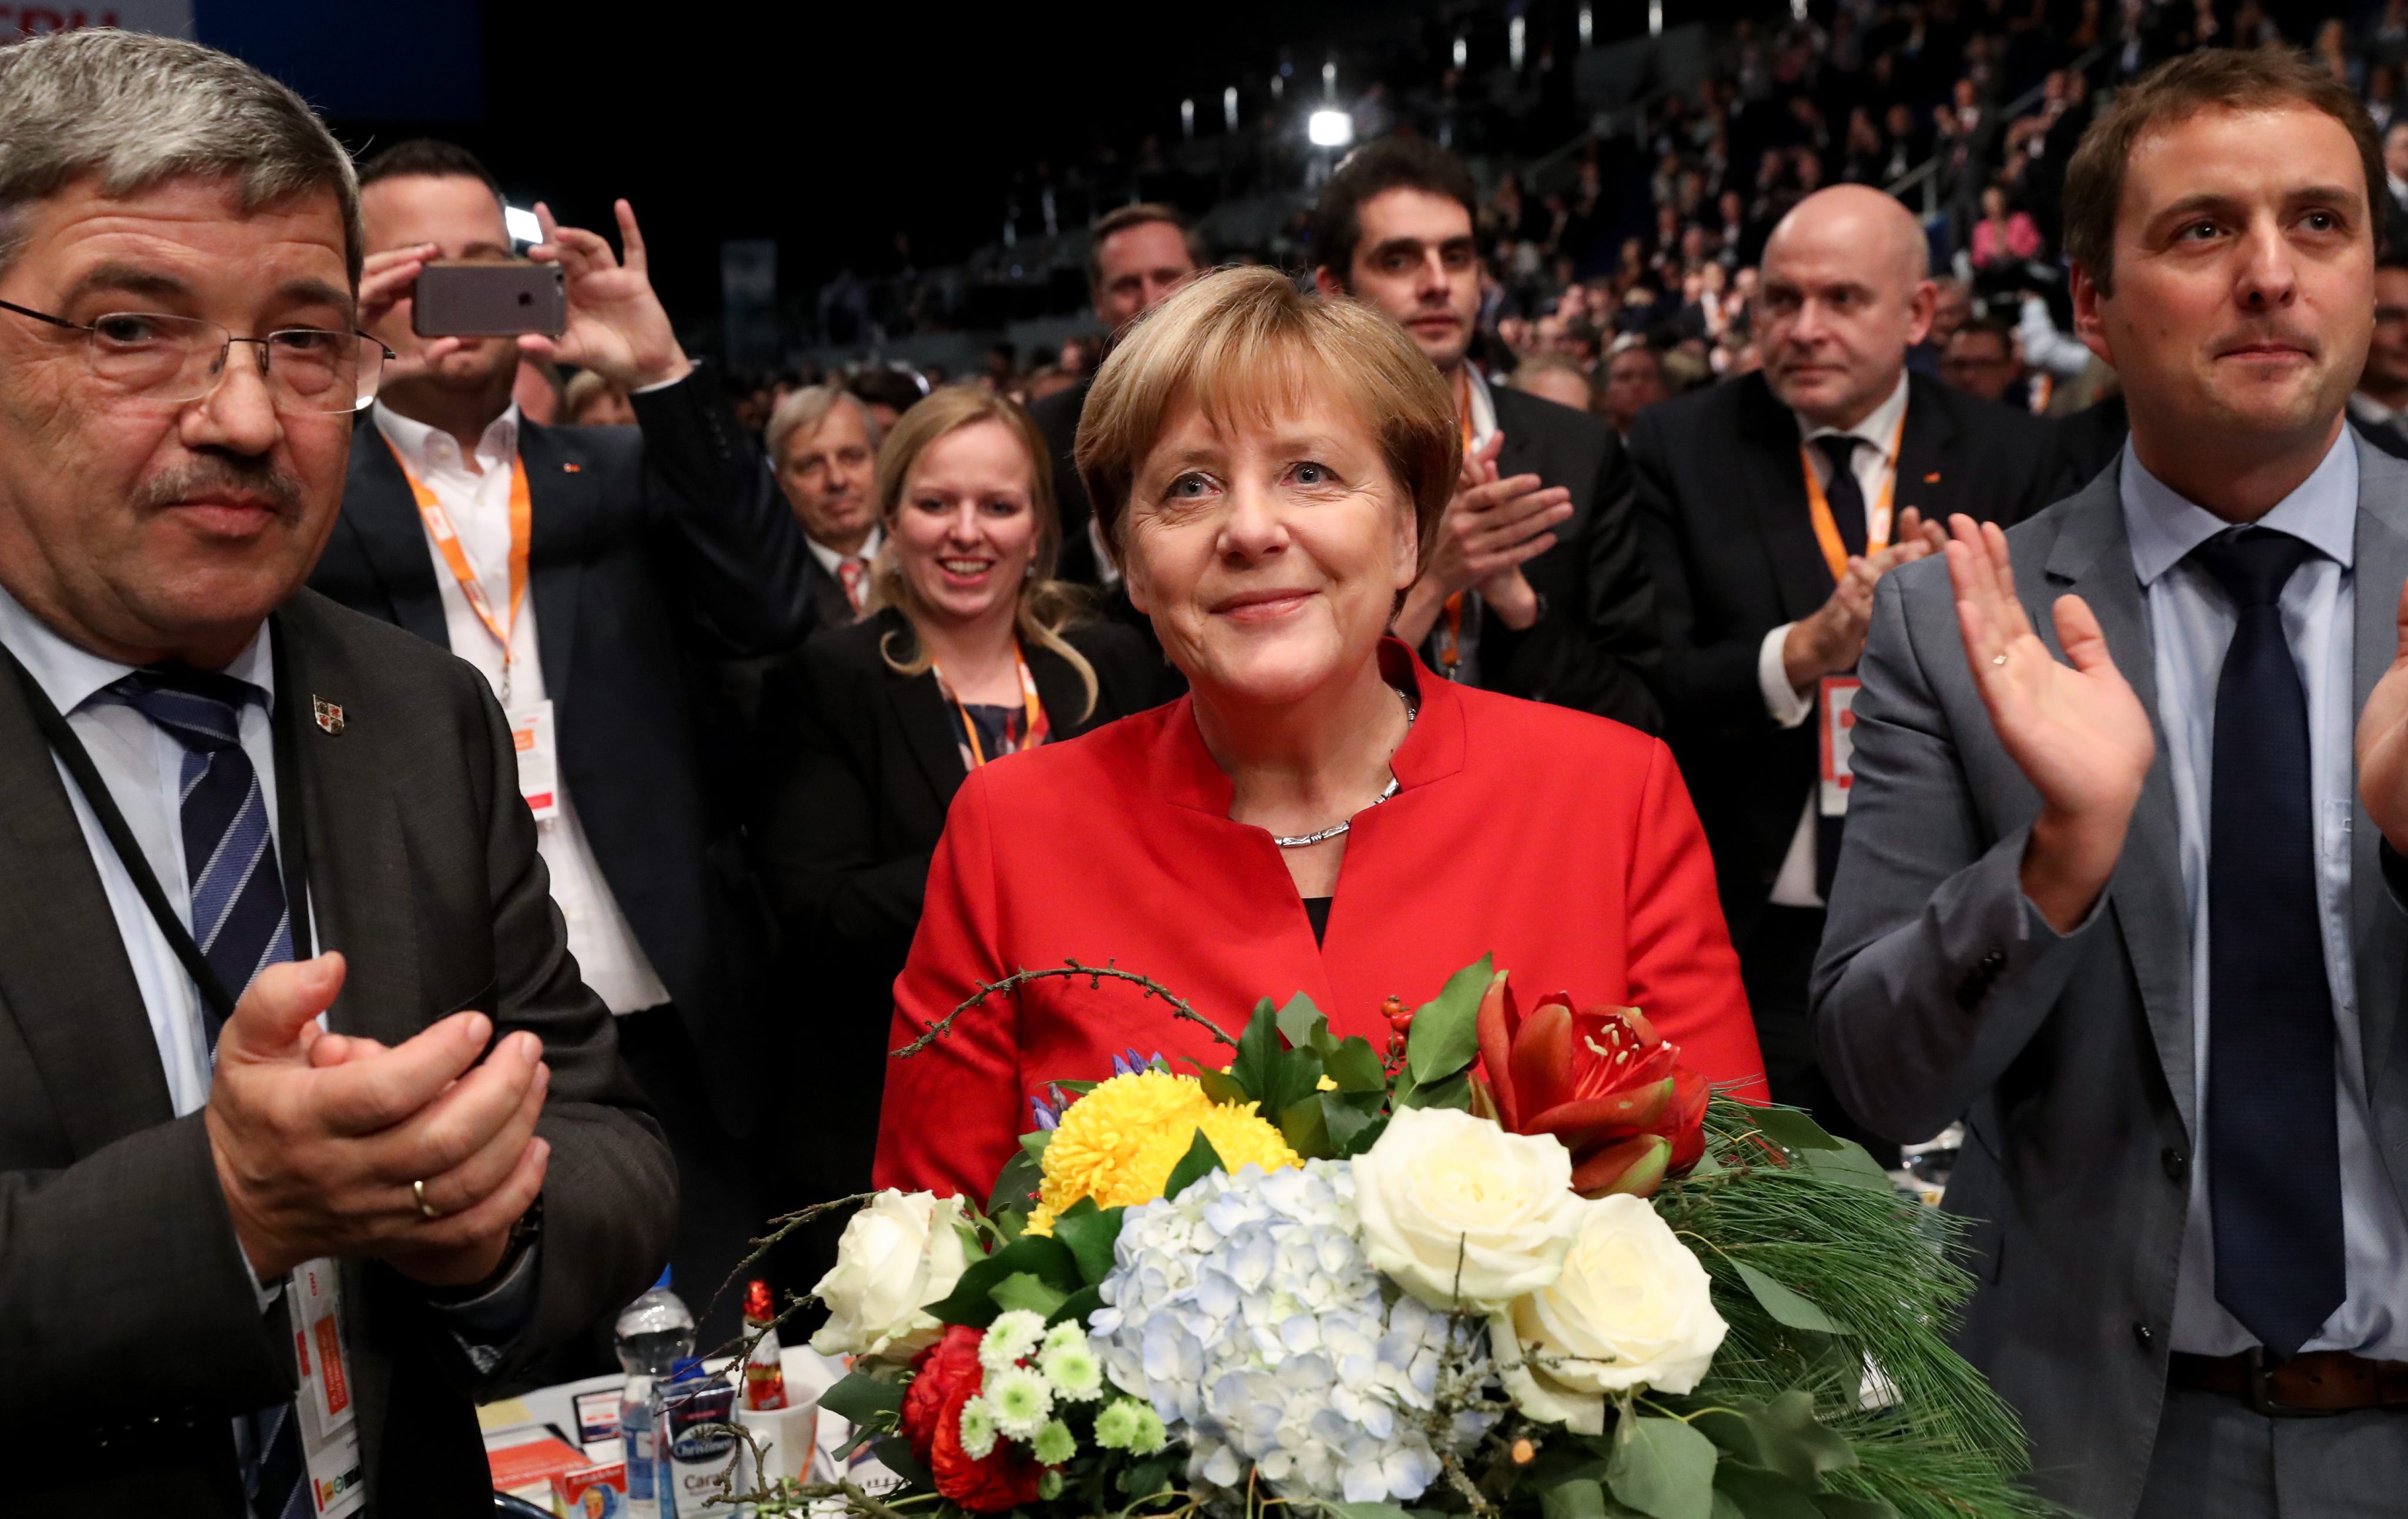 Με 89,5% η Μέρκελ επανεξελέγη στην ηγεσία των Χριστιανοδημοκρατών